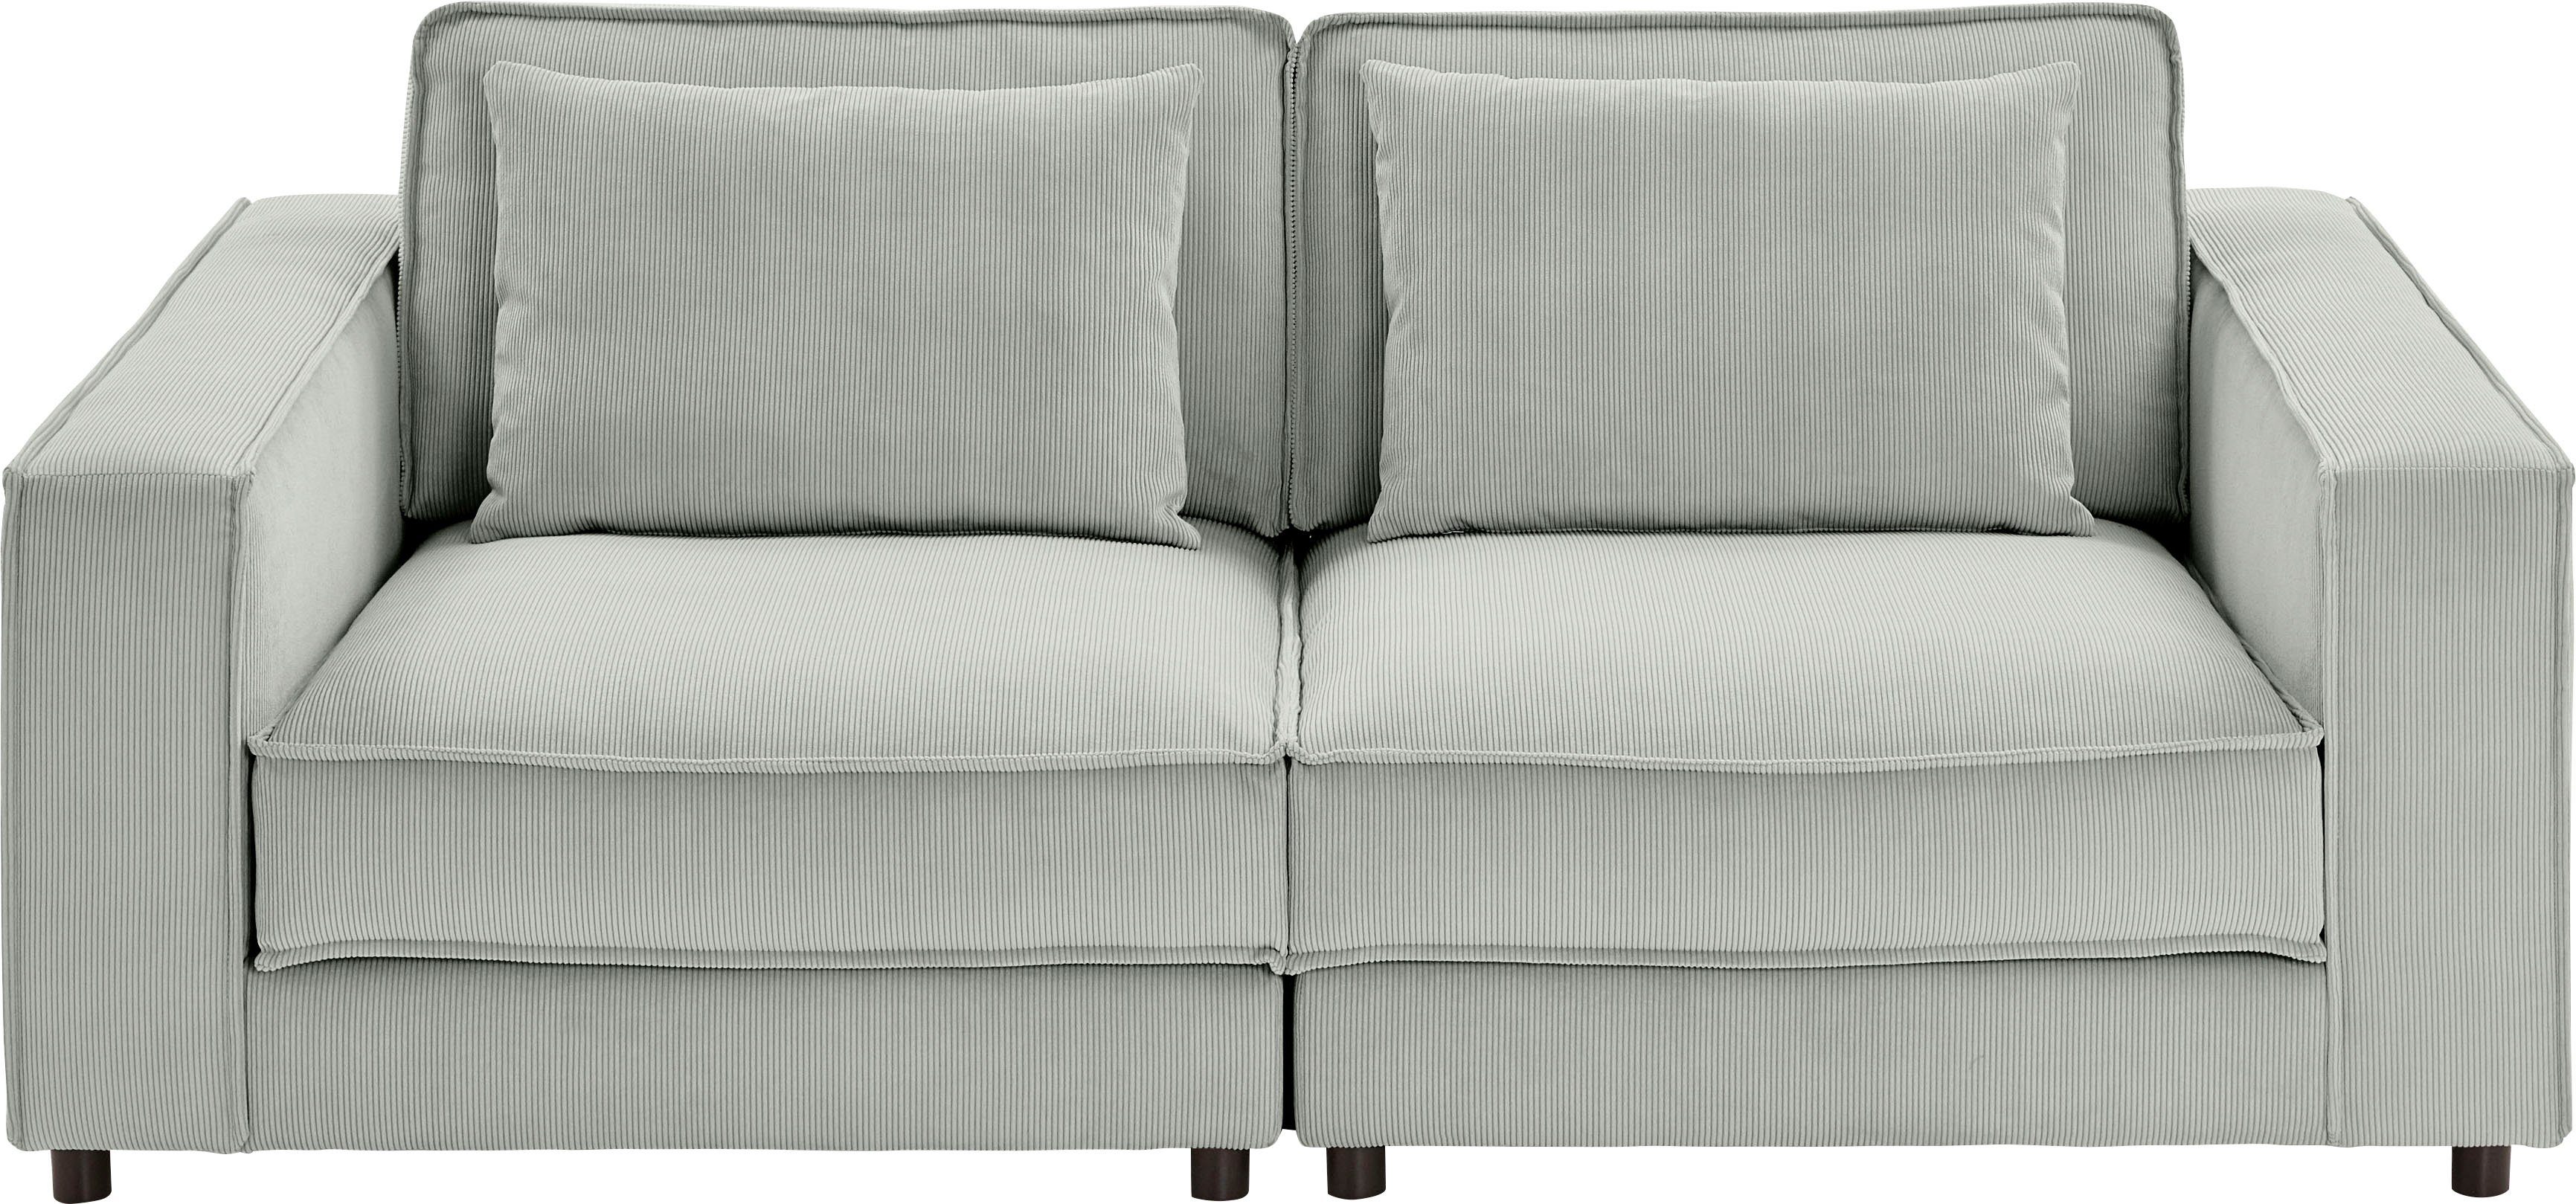 ATLANTIC home collection 2-Sitzer Valan, XXL-Sitzfläche, mit Cord-Bezug, frei stellbar, mit Wellenunterfederung grau